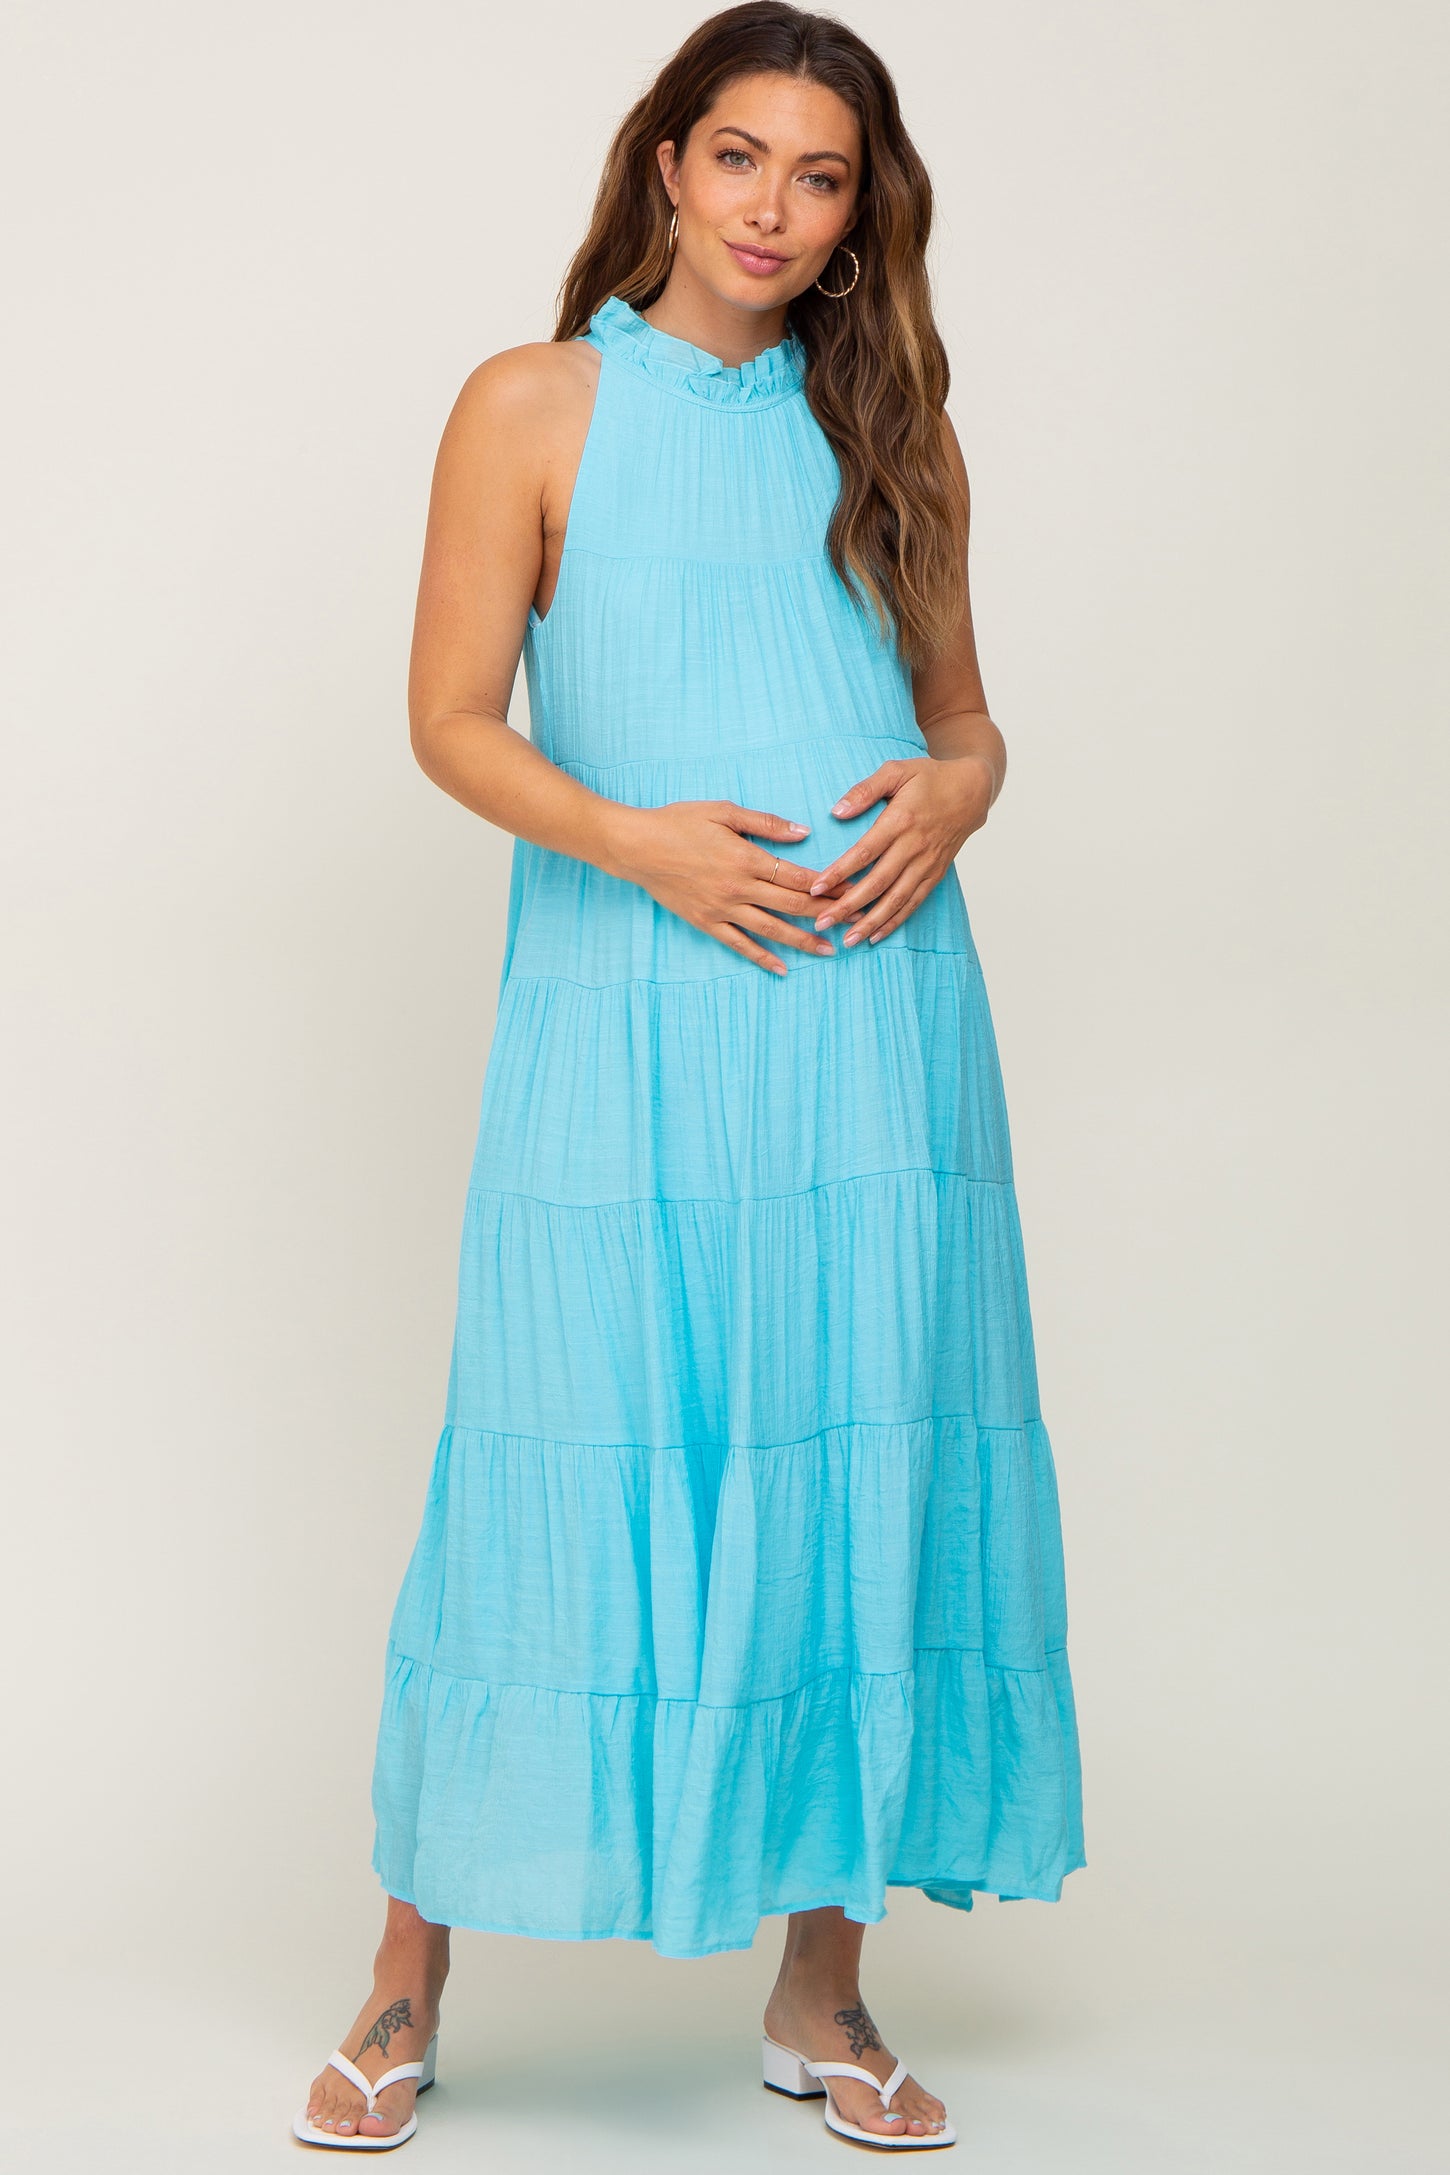 Aqua Tiered High Neck Maternity Maxi Dress